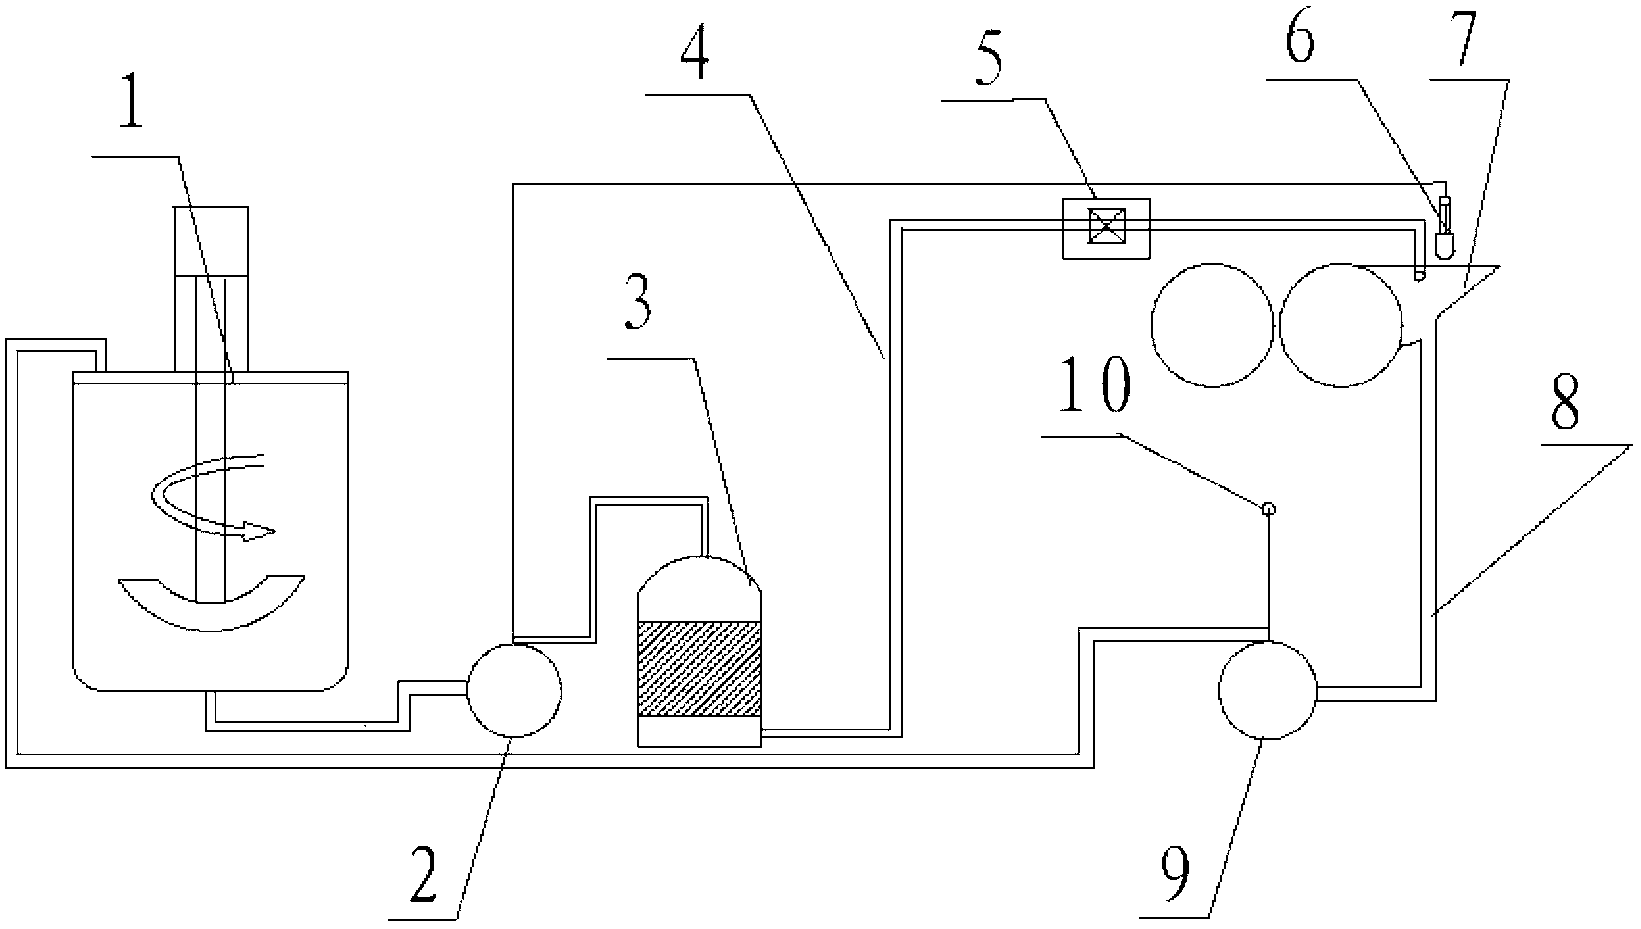 Cyclic slurry feeding system of coating machine